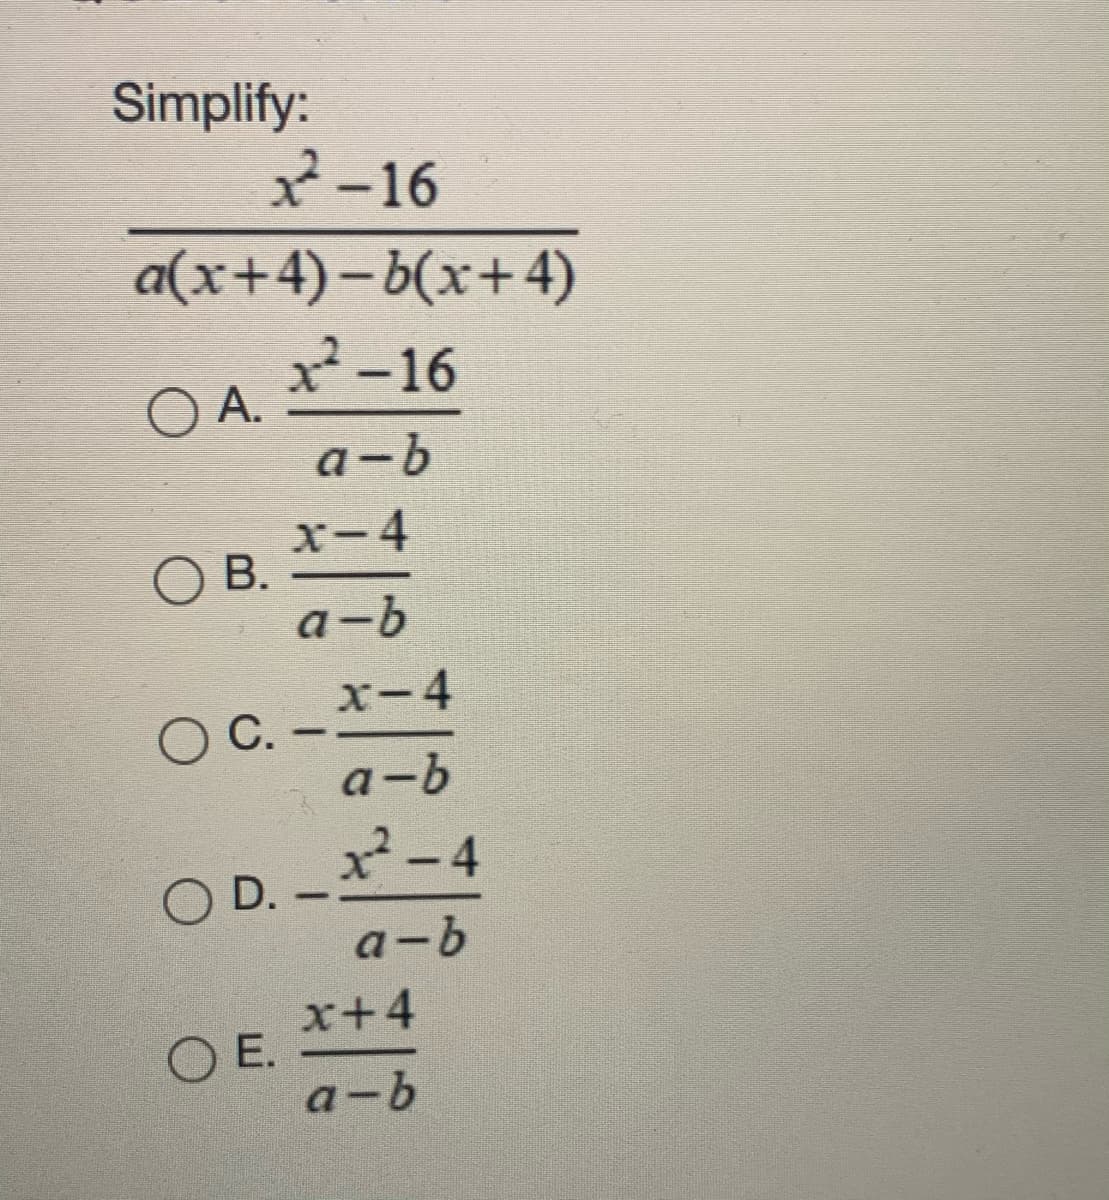 Simplify:
2-16
|
a(x+4)– b(x+4)
2-16
OA.
a-b
x-4
O B.
a-b
O
x-4
C -
a-b
x-4
O D.
a-b
x+4
O E.
a-b
